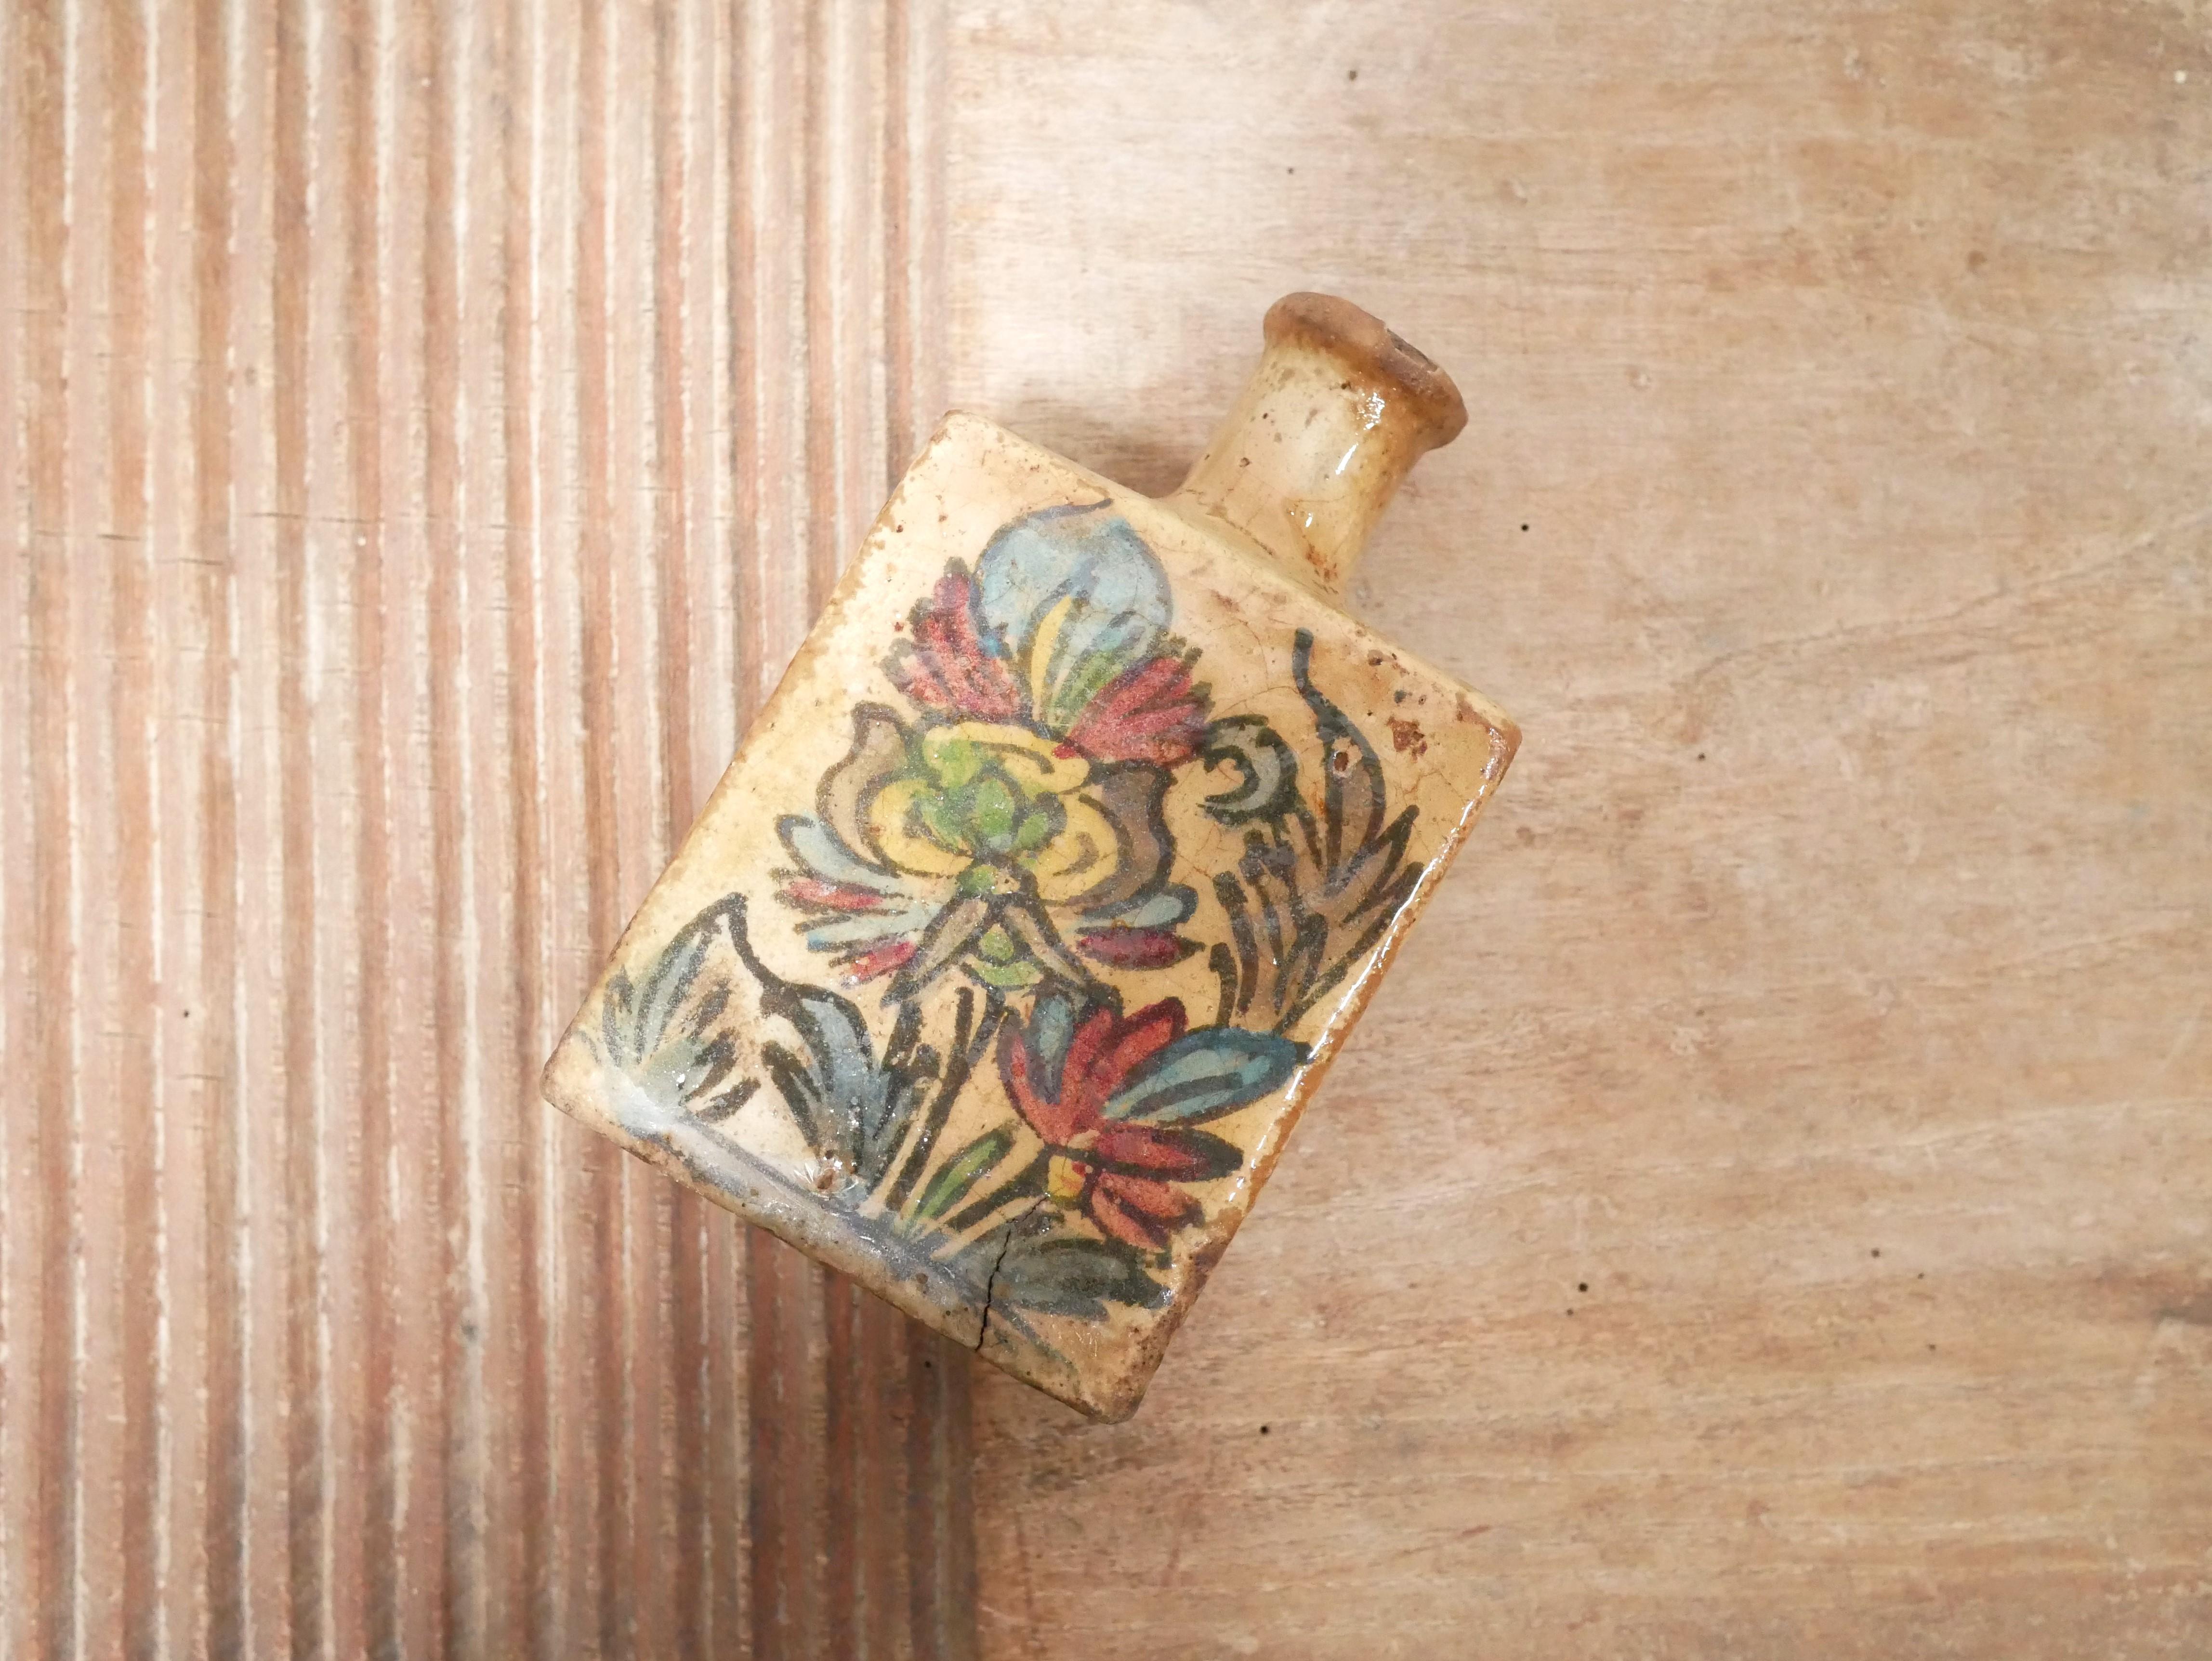 Bouteille en terre cuite vernissée faite à la main, Iran, fin du XIXe siècle, période de la dynastie Qajar.

Jolie couleur chaude, forme harmonieuse et moderne.
Cette bouteille, chargée d'histoire, ne manque pas de caractère et d'élégance. Il sera